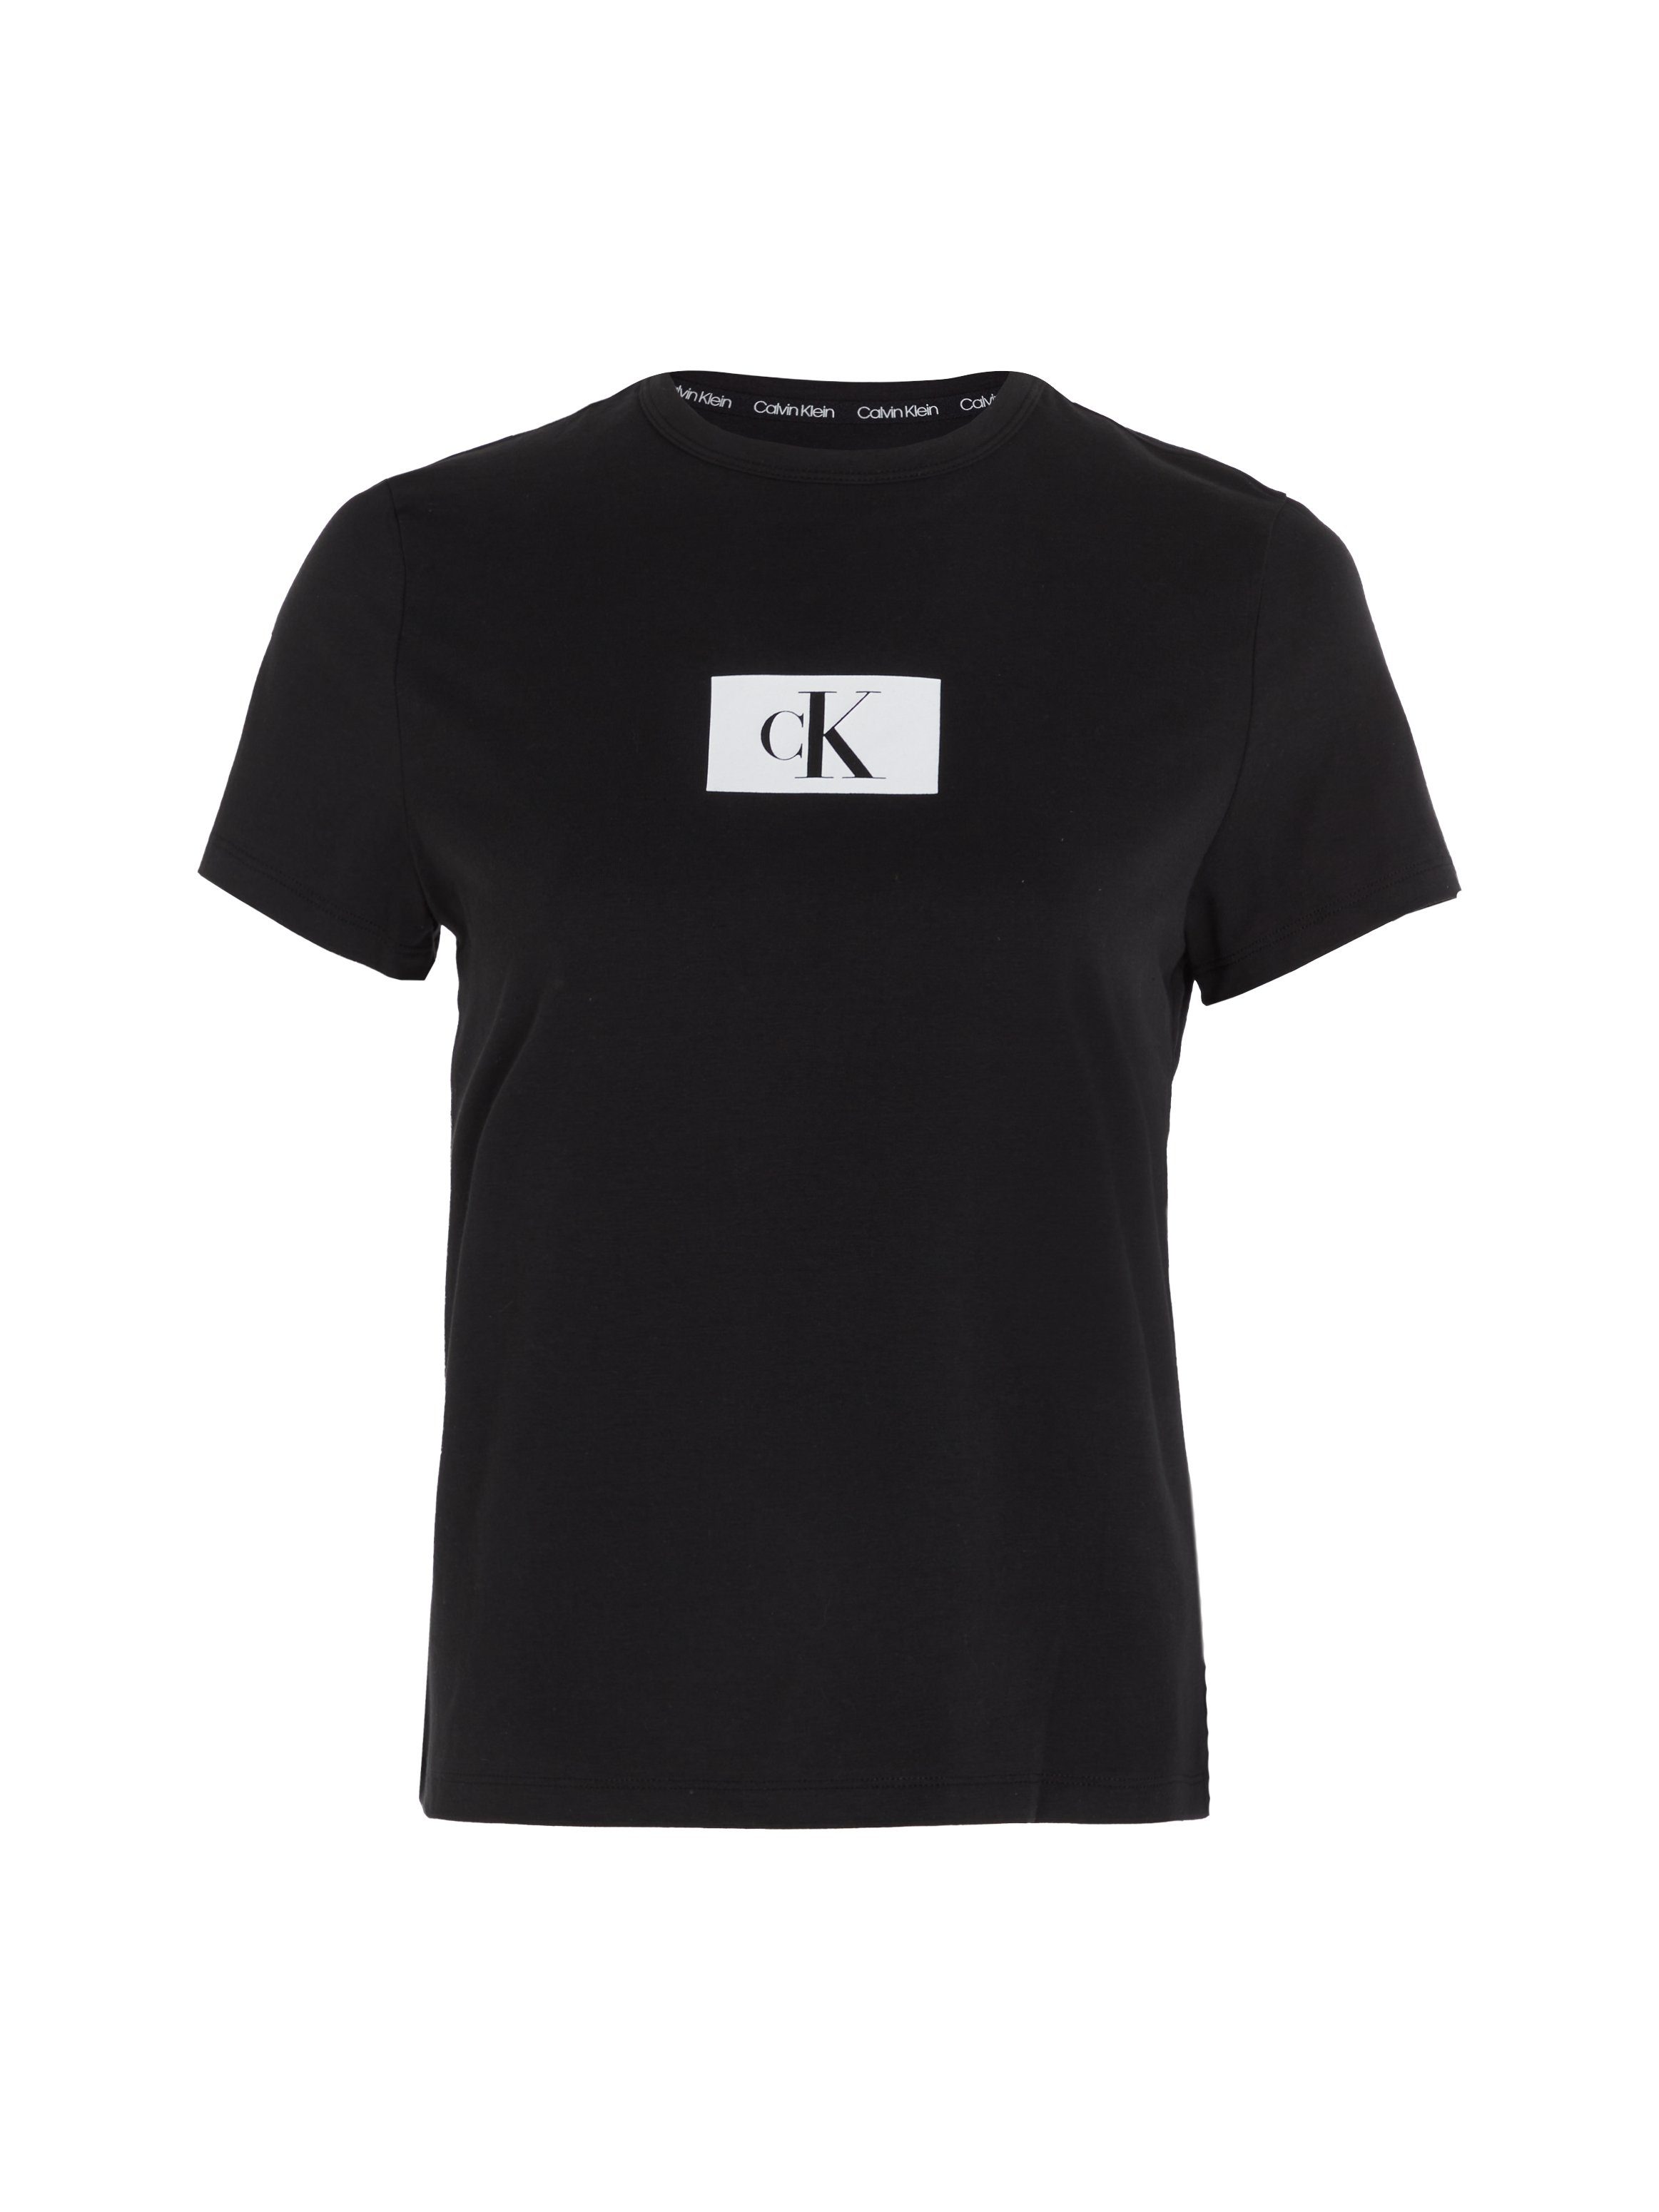 Calvin Klein Underwear Kurzarmshirt S/S BLACK NECK CREW